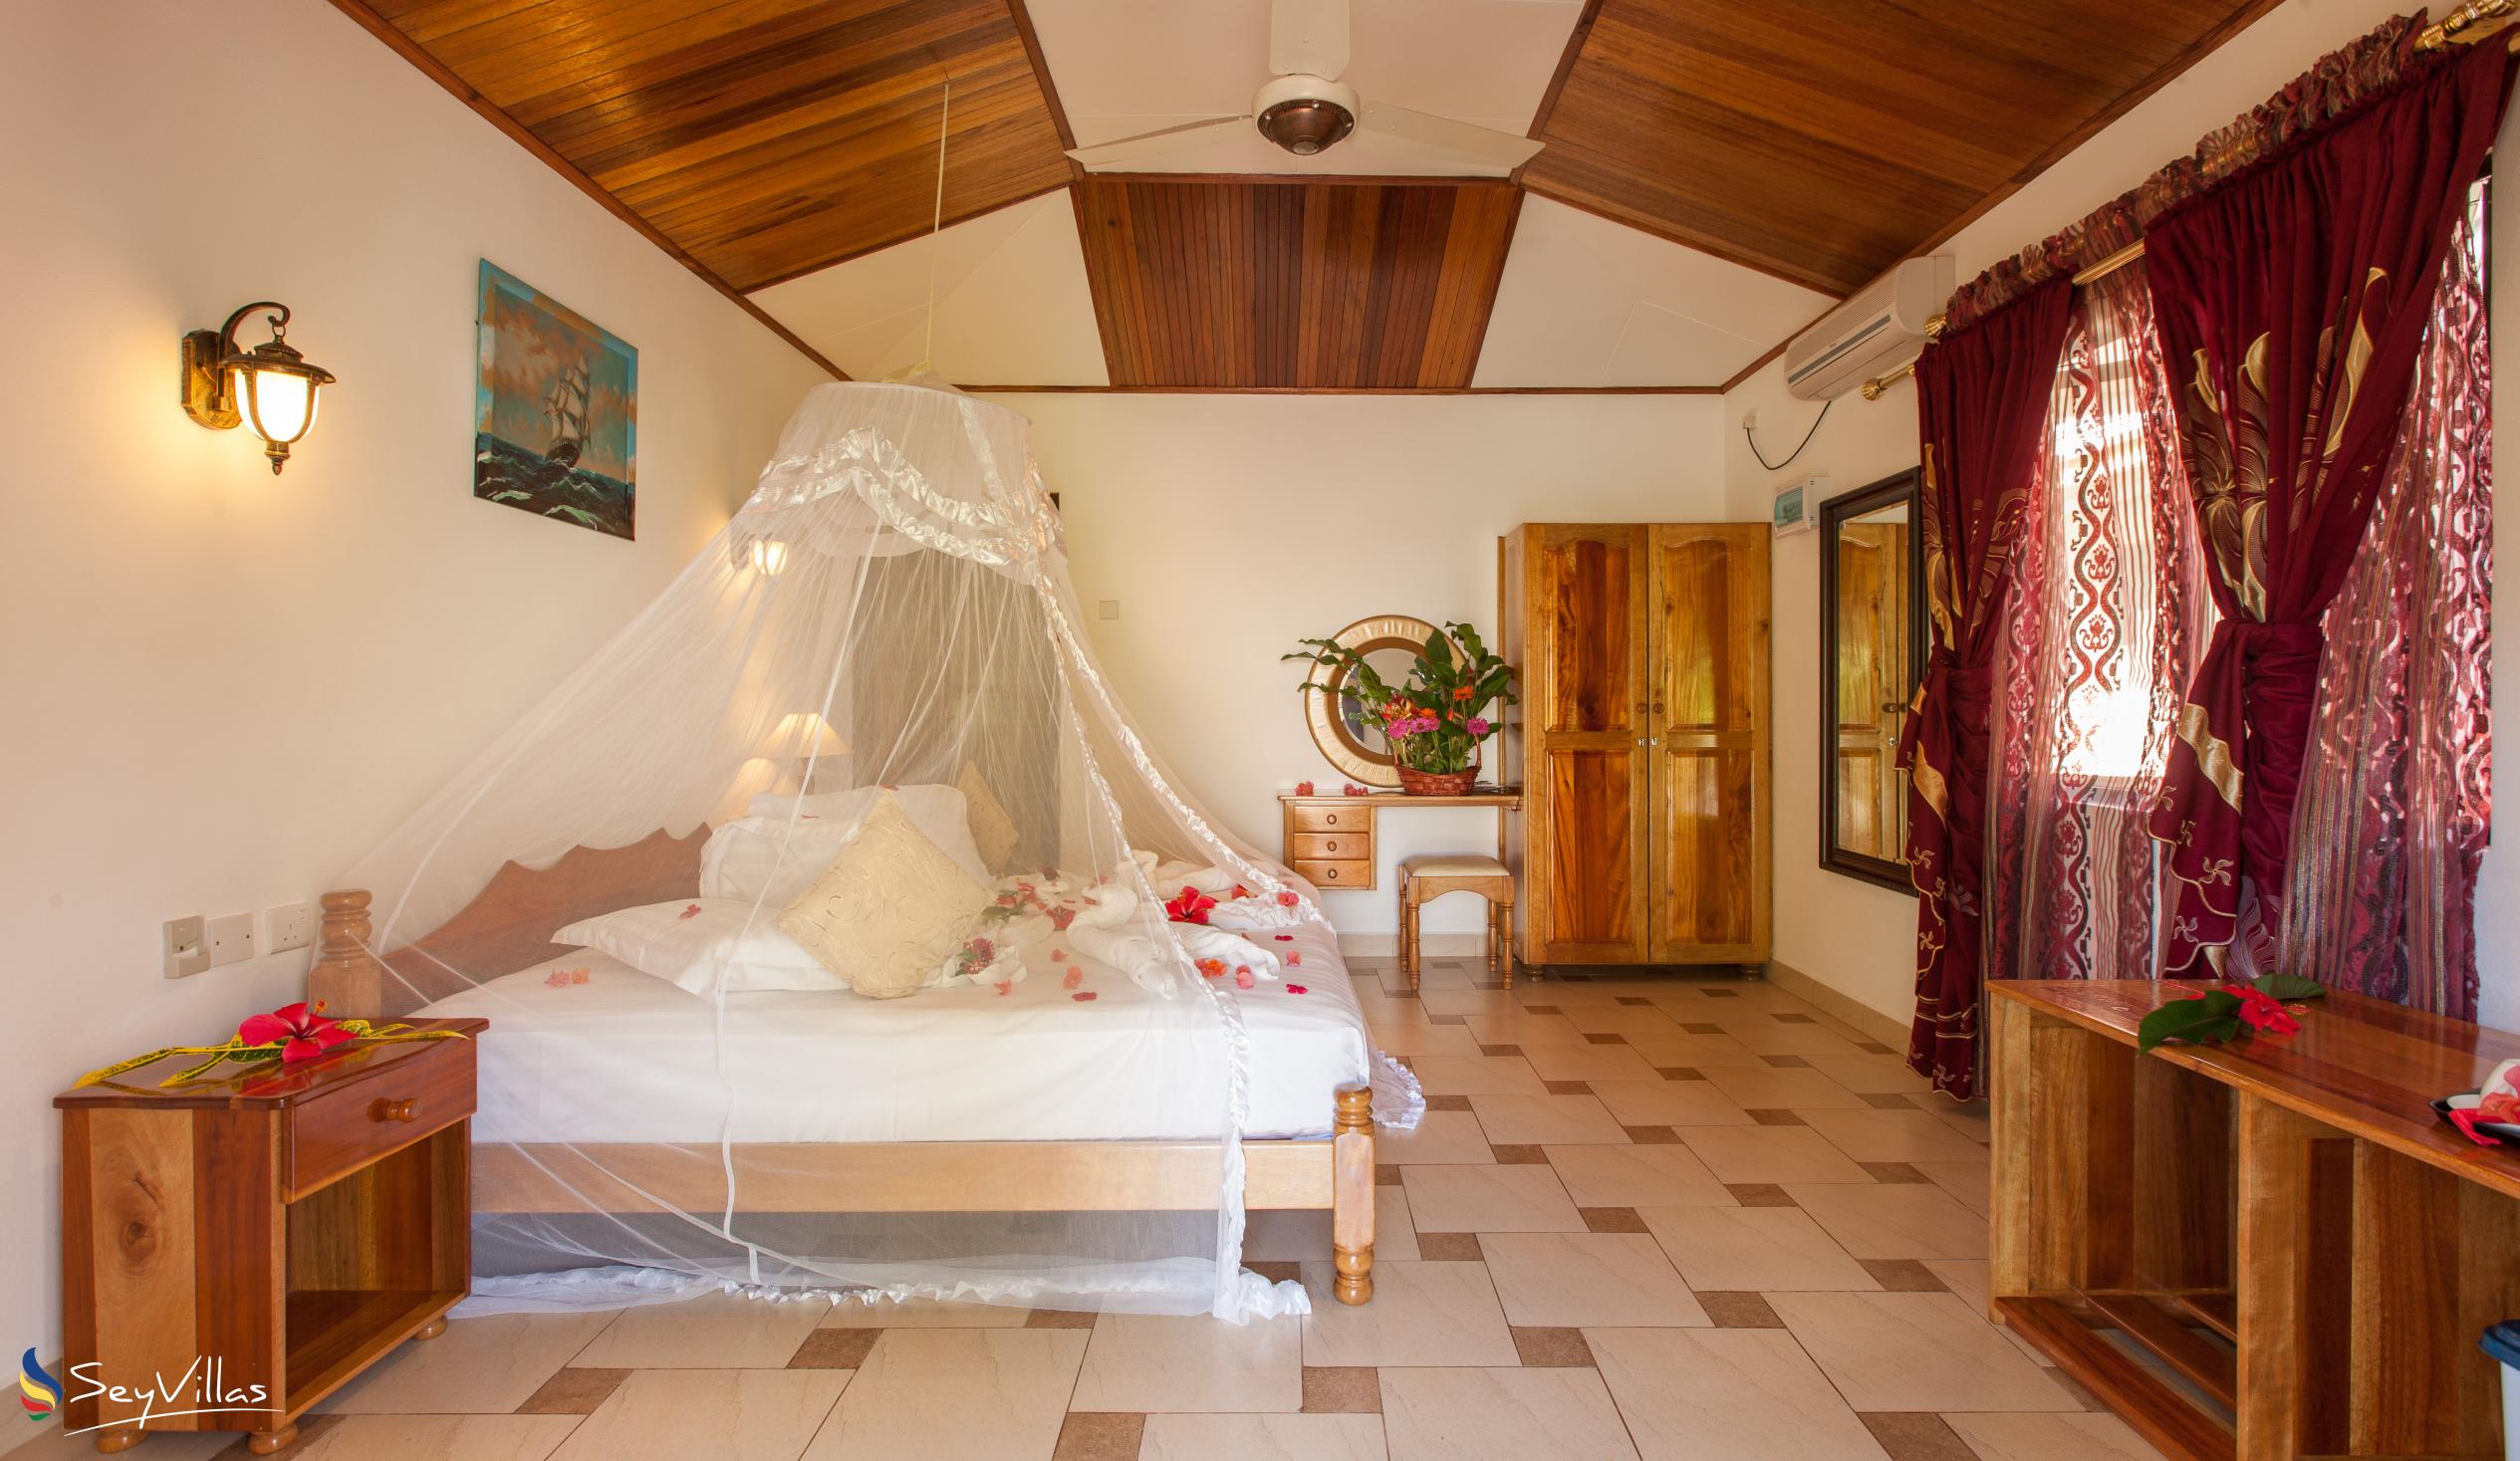 Foto 41: Etoile Labrine - Chambre Familiale - La Digue (Seychelles)